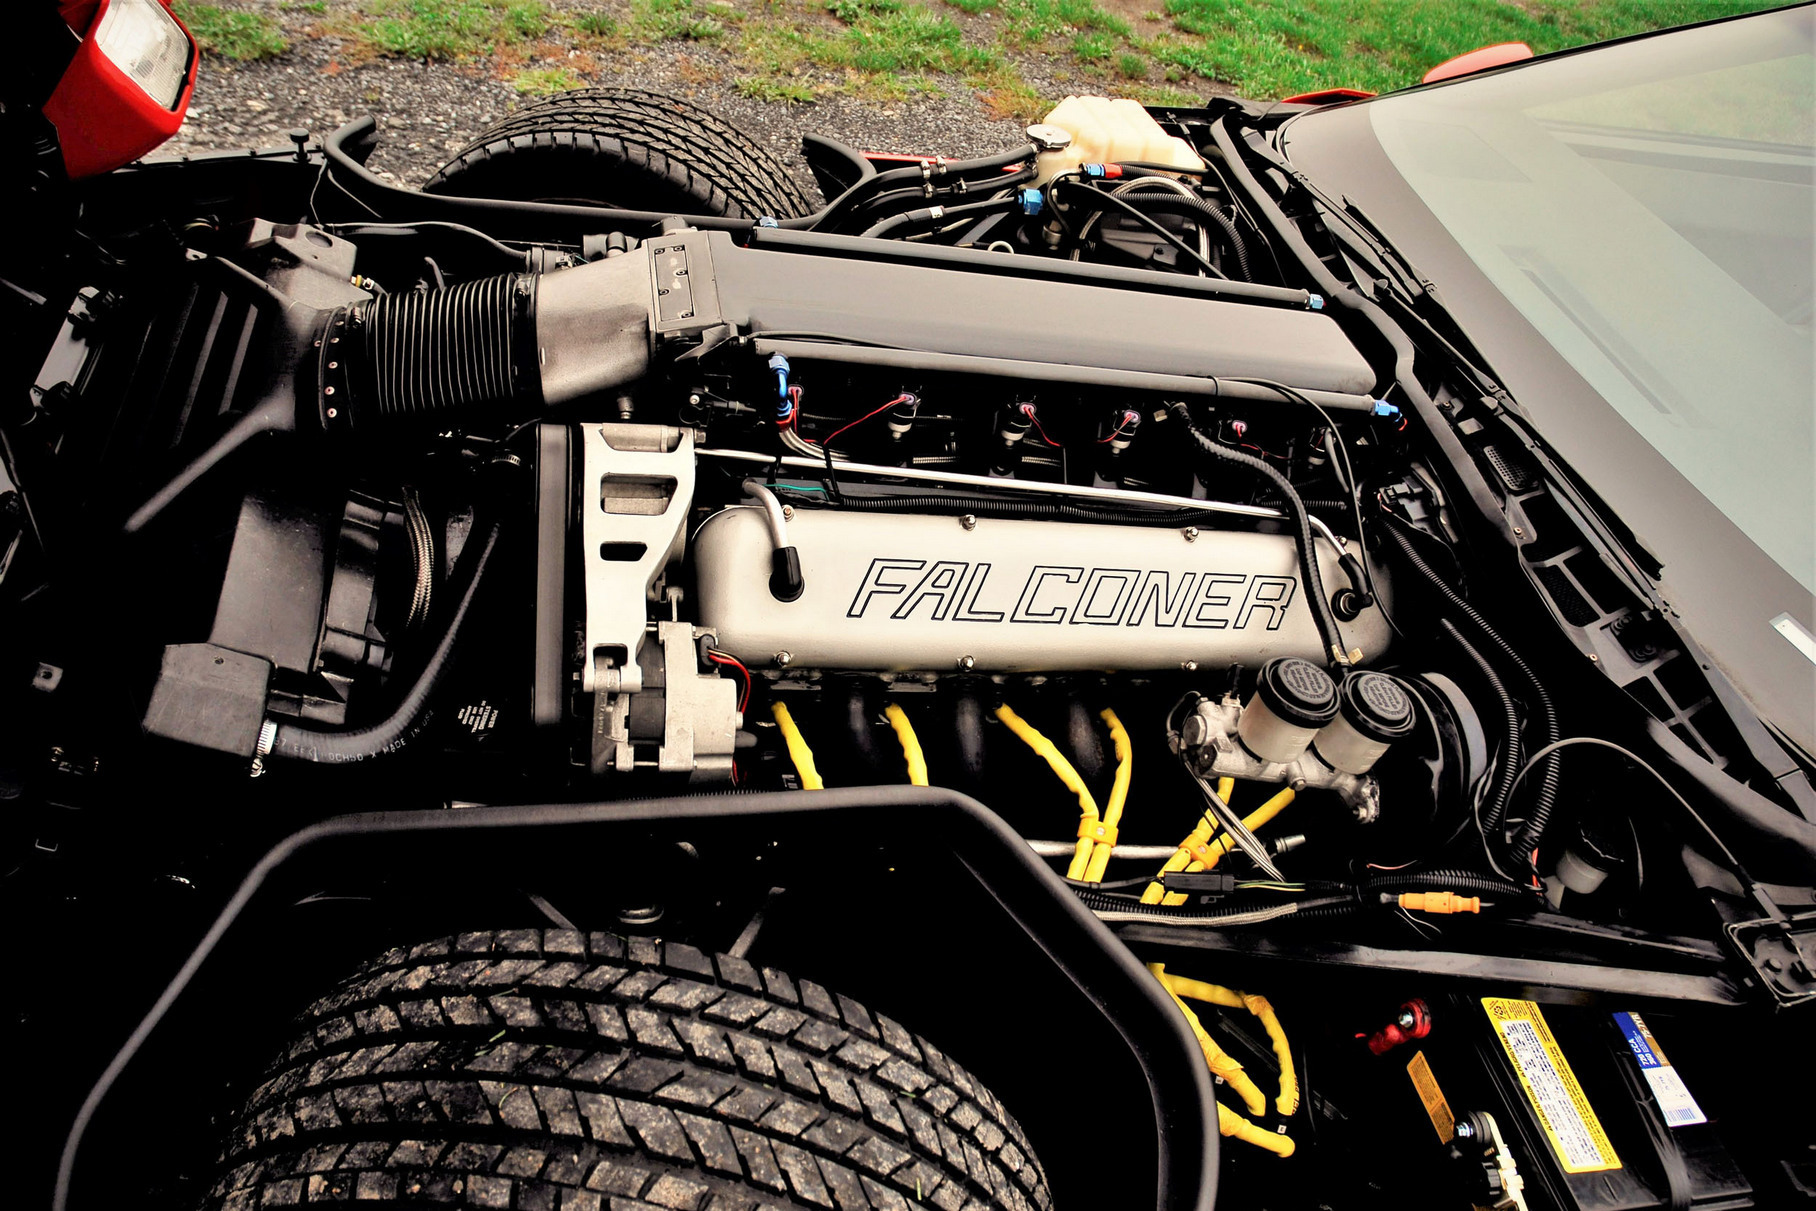 Двигатель V12 объёмом 9,8 литра развивал свыше 600 лошадиных сил. Для сравнения, в то время обычный серийный Corvette C4 имел всего 250 лошадиных сил, а топ-версия ZR-1 с 32-клапанным мотором LT5 выдавала 375–405 сил (в зависимости от года выпуска)